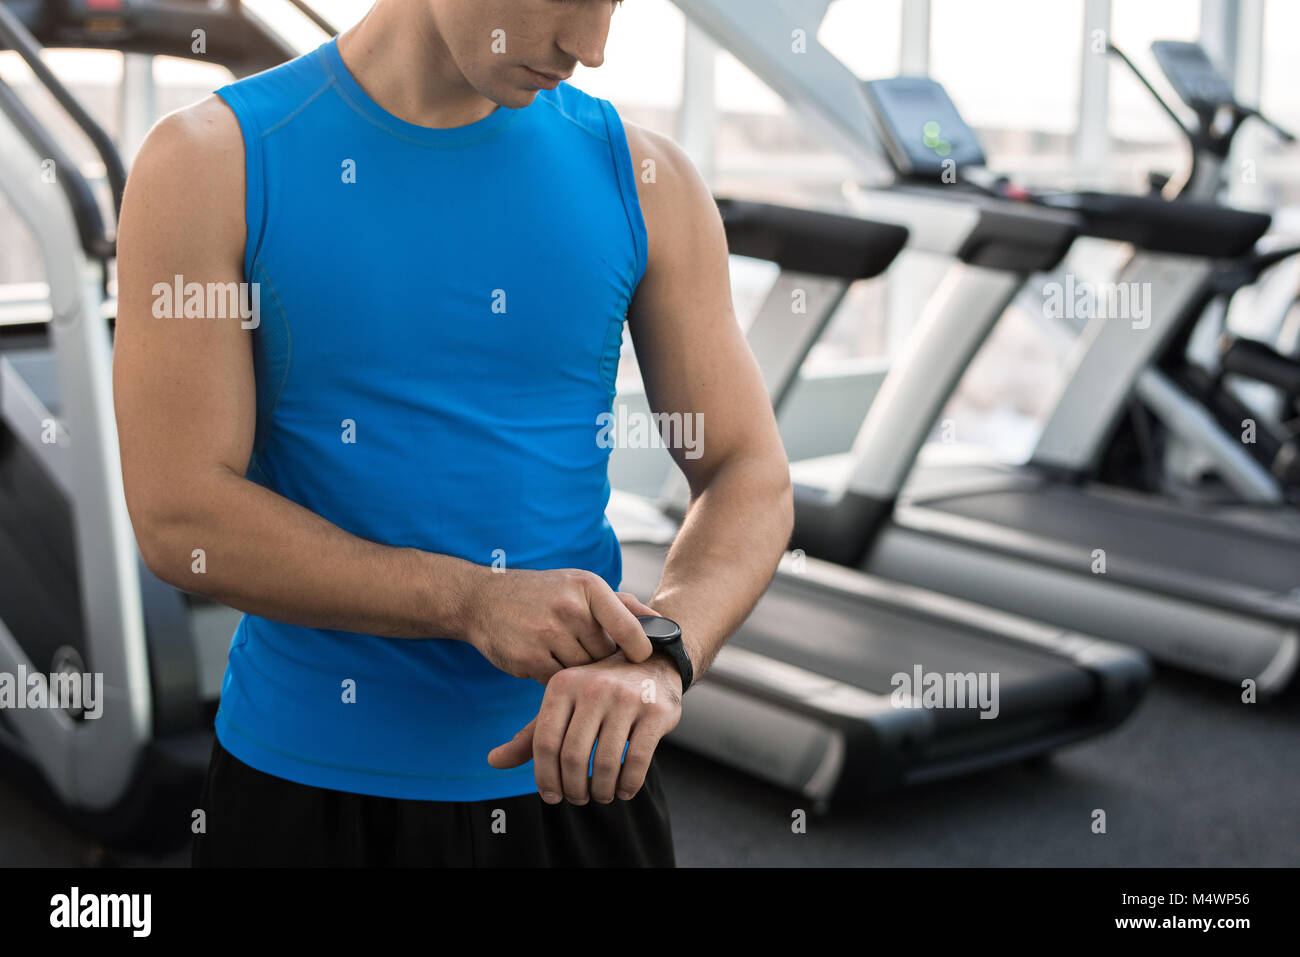 Den mittleren Abschnitt Portrait von unkenntlich muskulösen Mann Kontrolle fitness Tracker nach dem Training im Fitnessraum, Kopie Raum Stockfoto